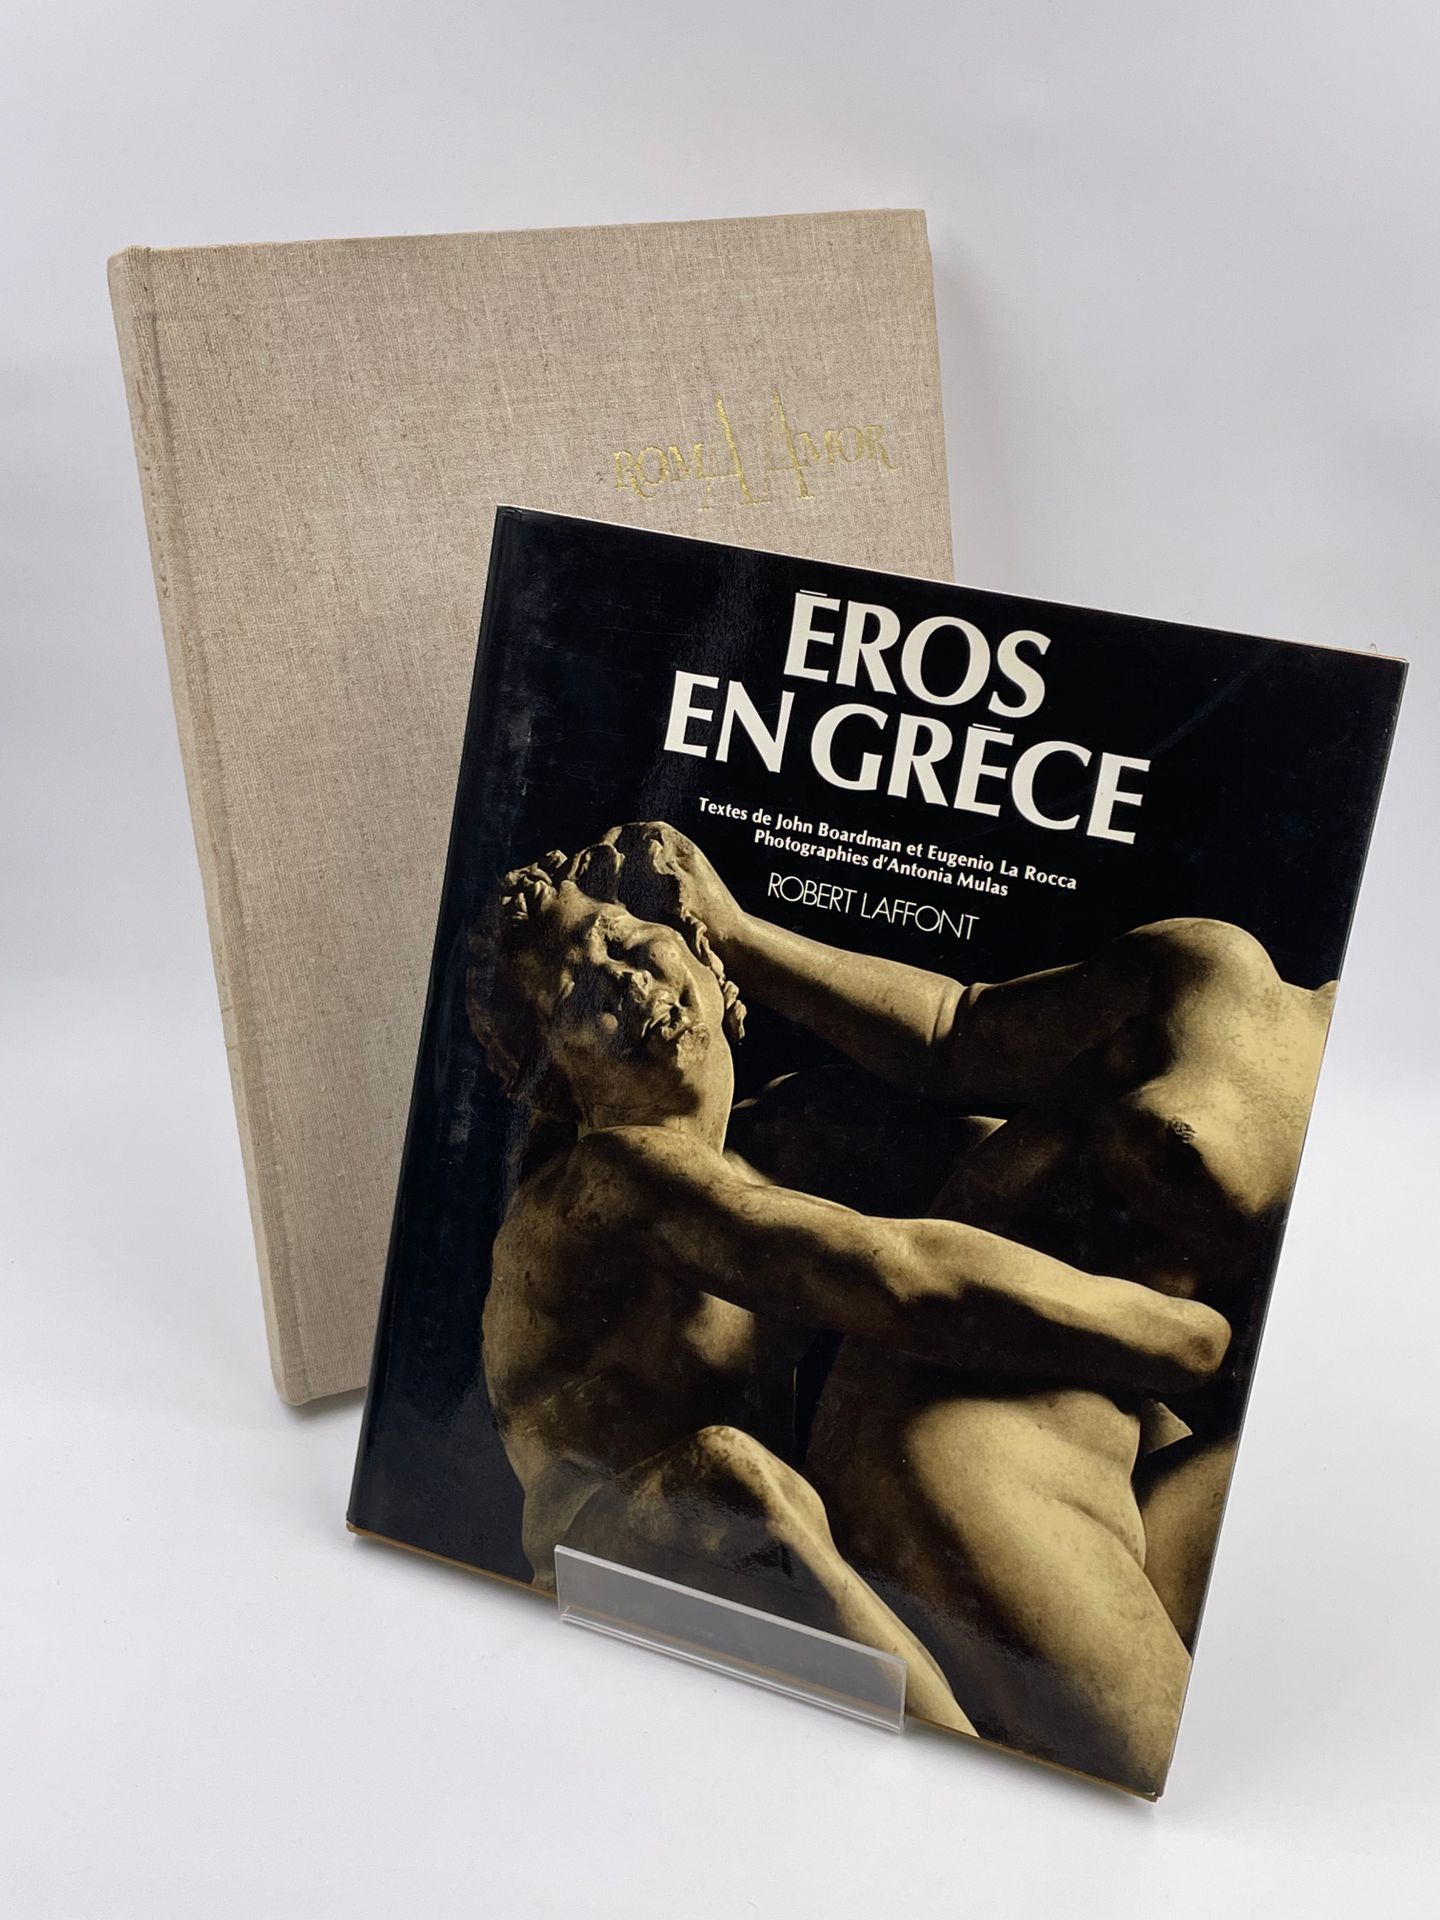 Null 2 volumi: 

- EROS IN GRECIA", J. Boardman, Eugenio La Rocca, Phot.Antonia &hellip;